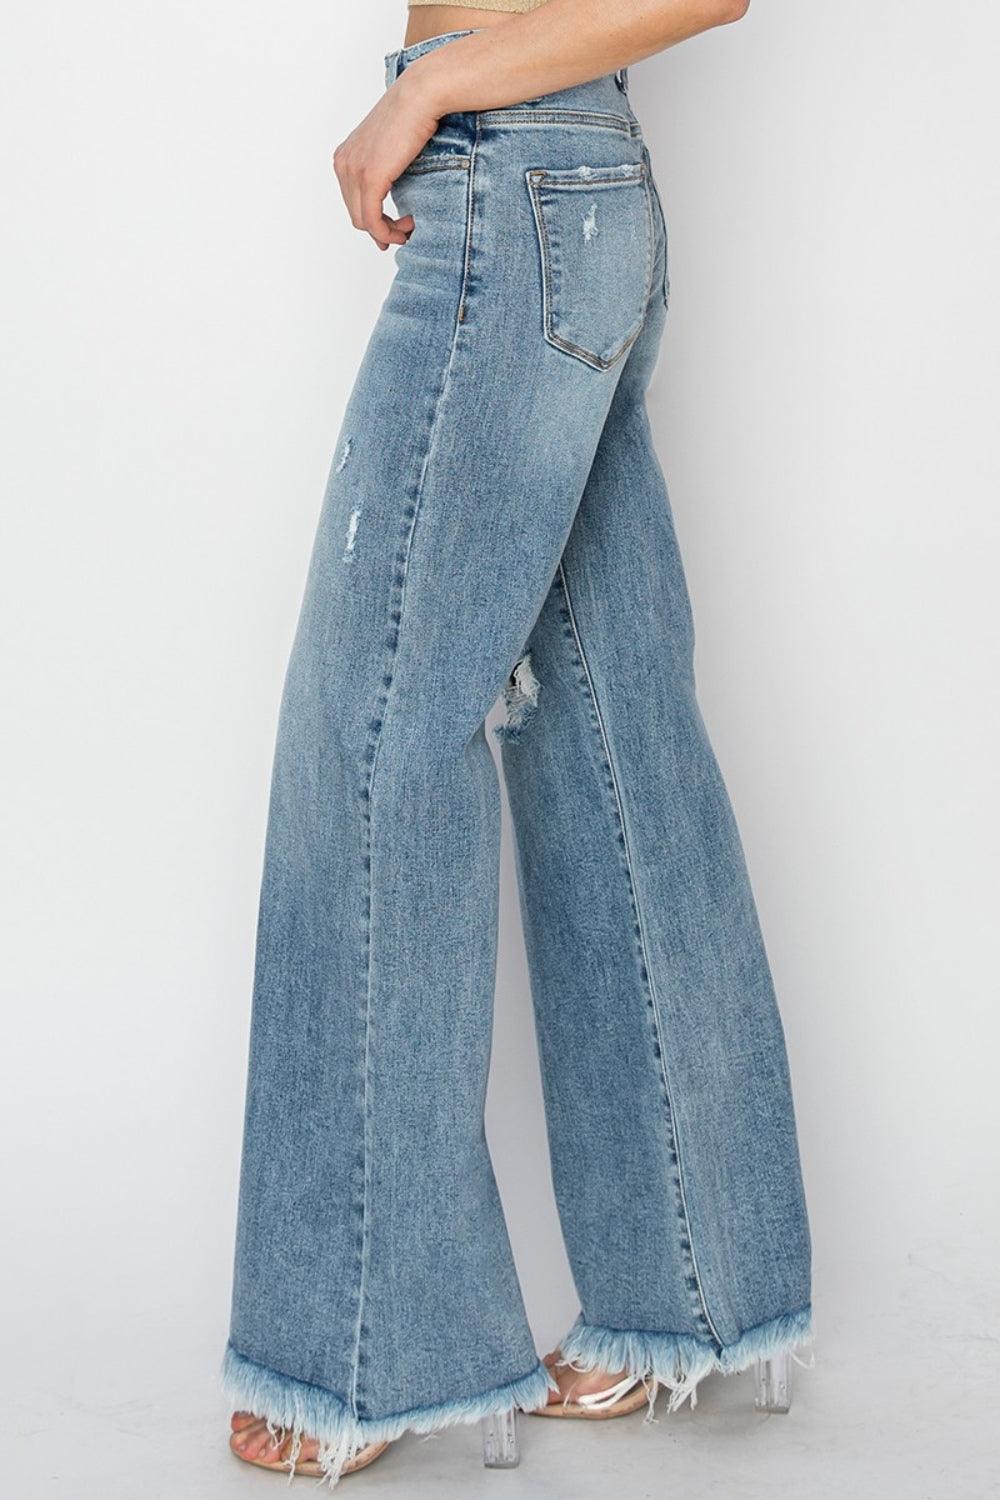 RISEN Mid Rise Button Fly Wide Leg Jeans - Lucianne Boutique